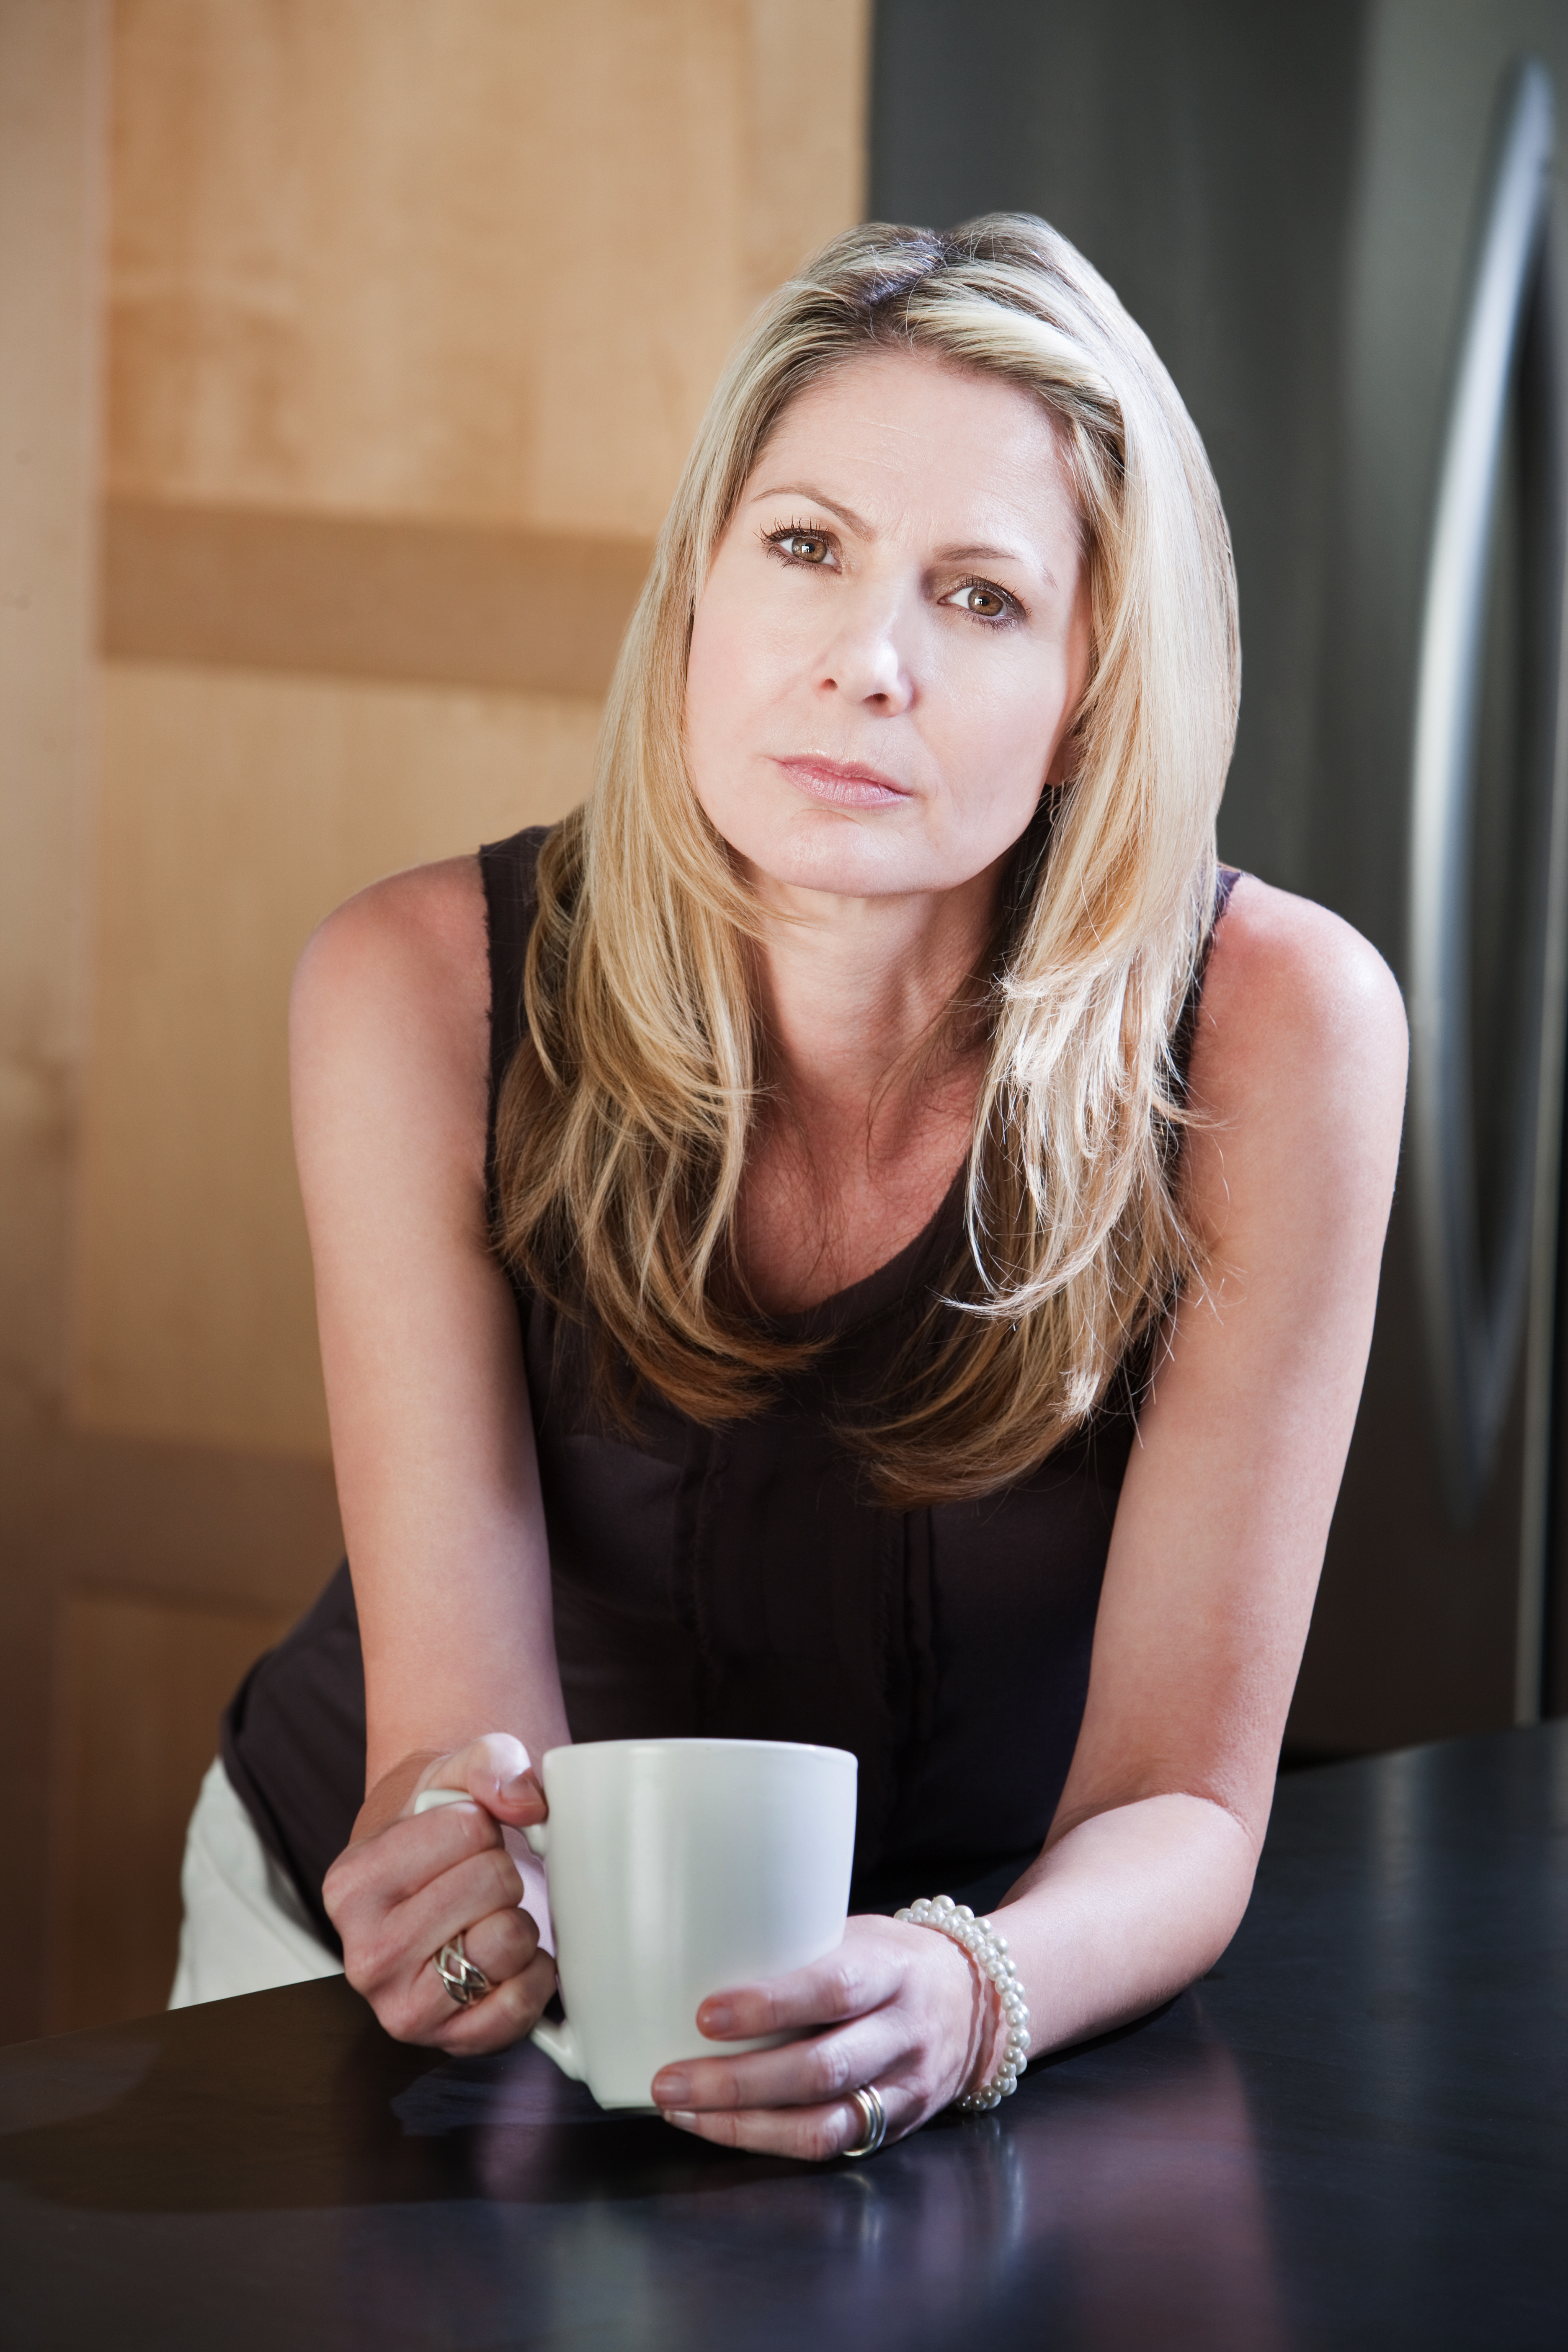 Une femme d'âge moyen tenant une tasse à café | Source : Shutterstock